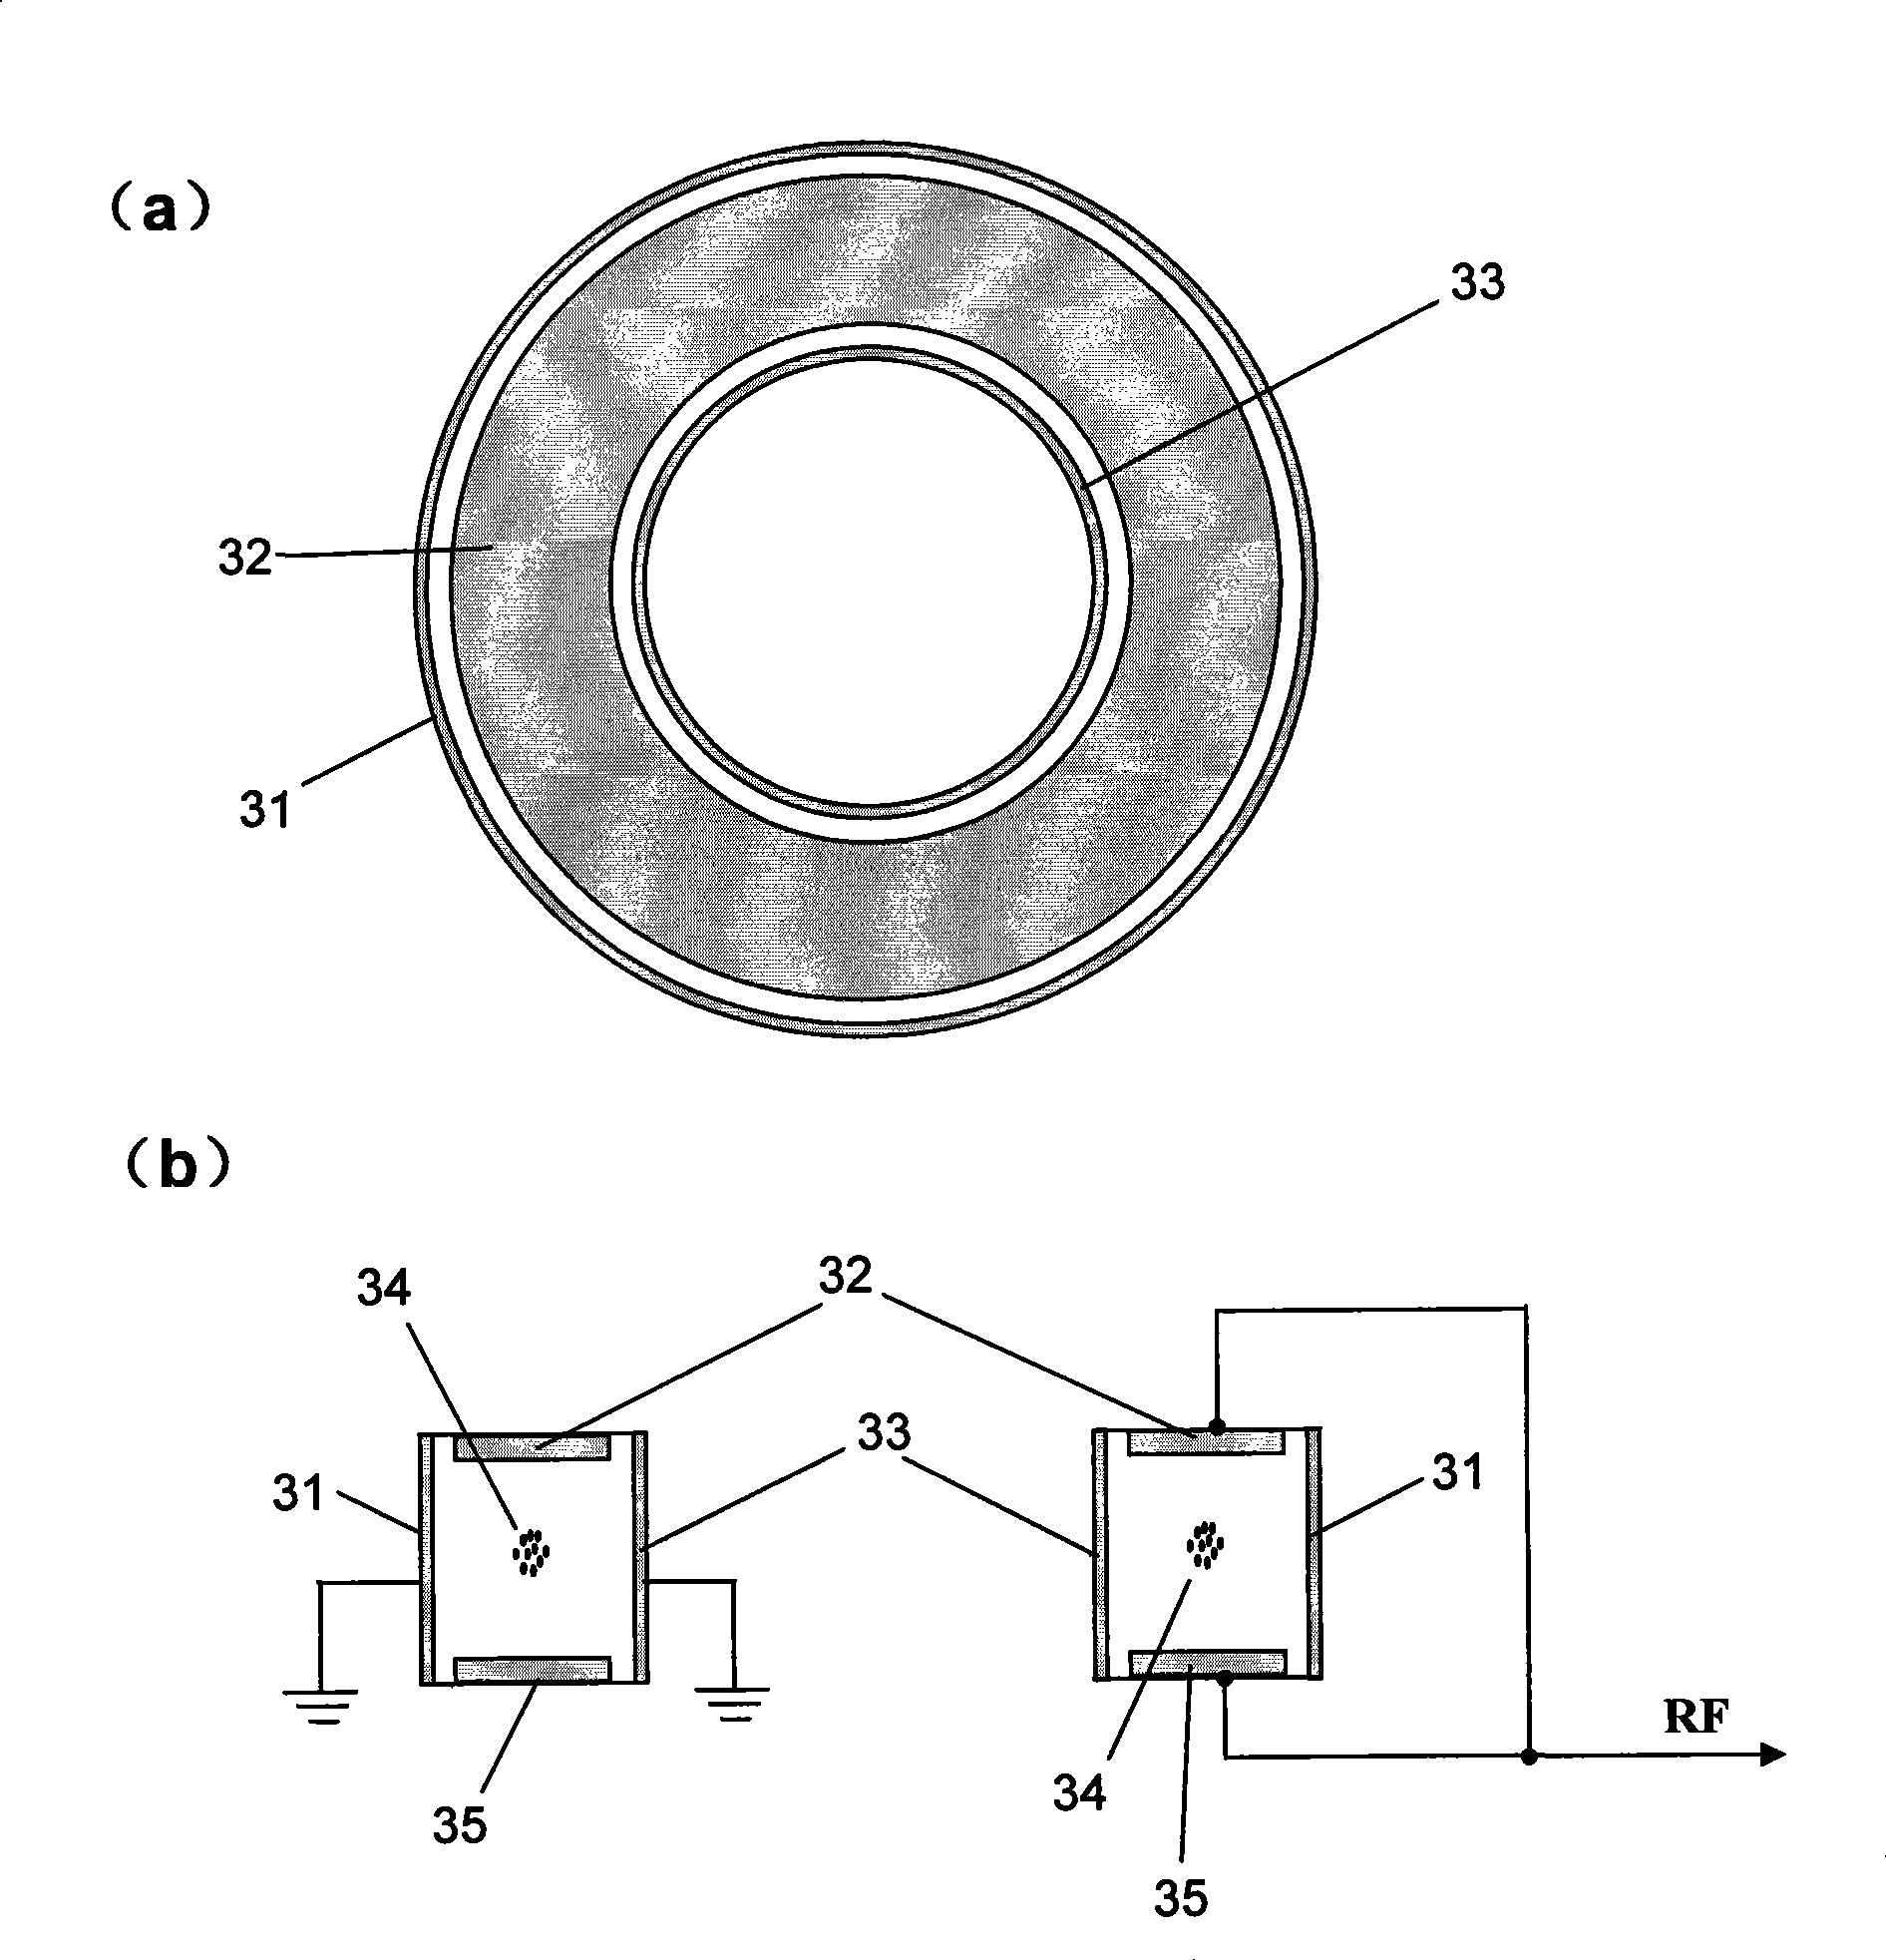 Circular ring ion trap and circular ring ion trap array